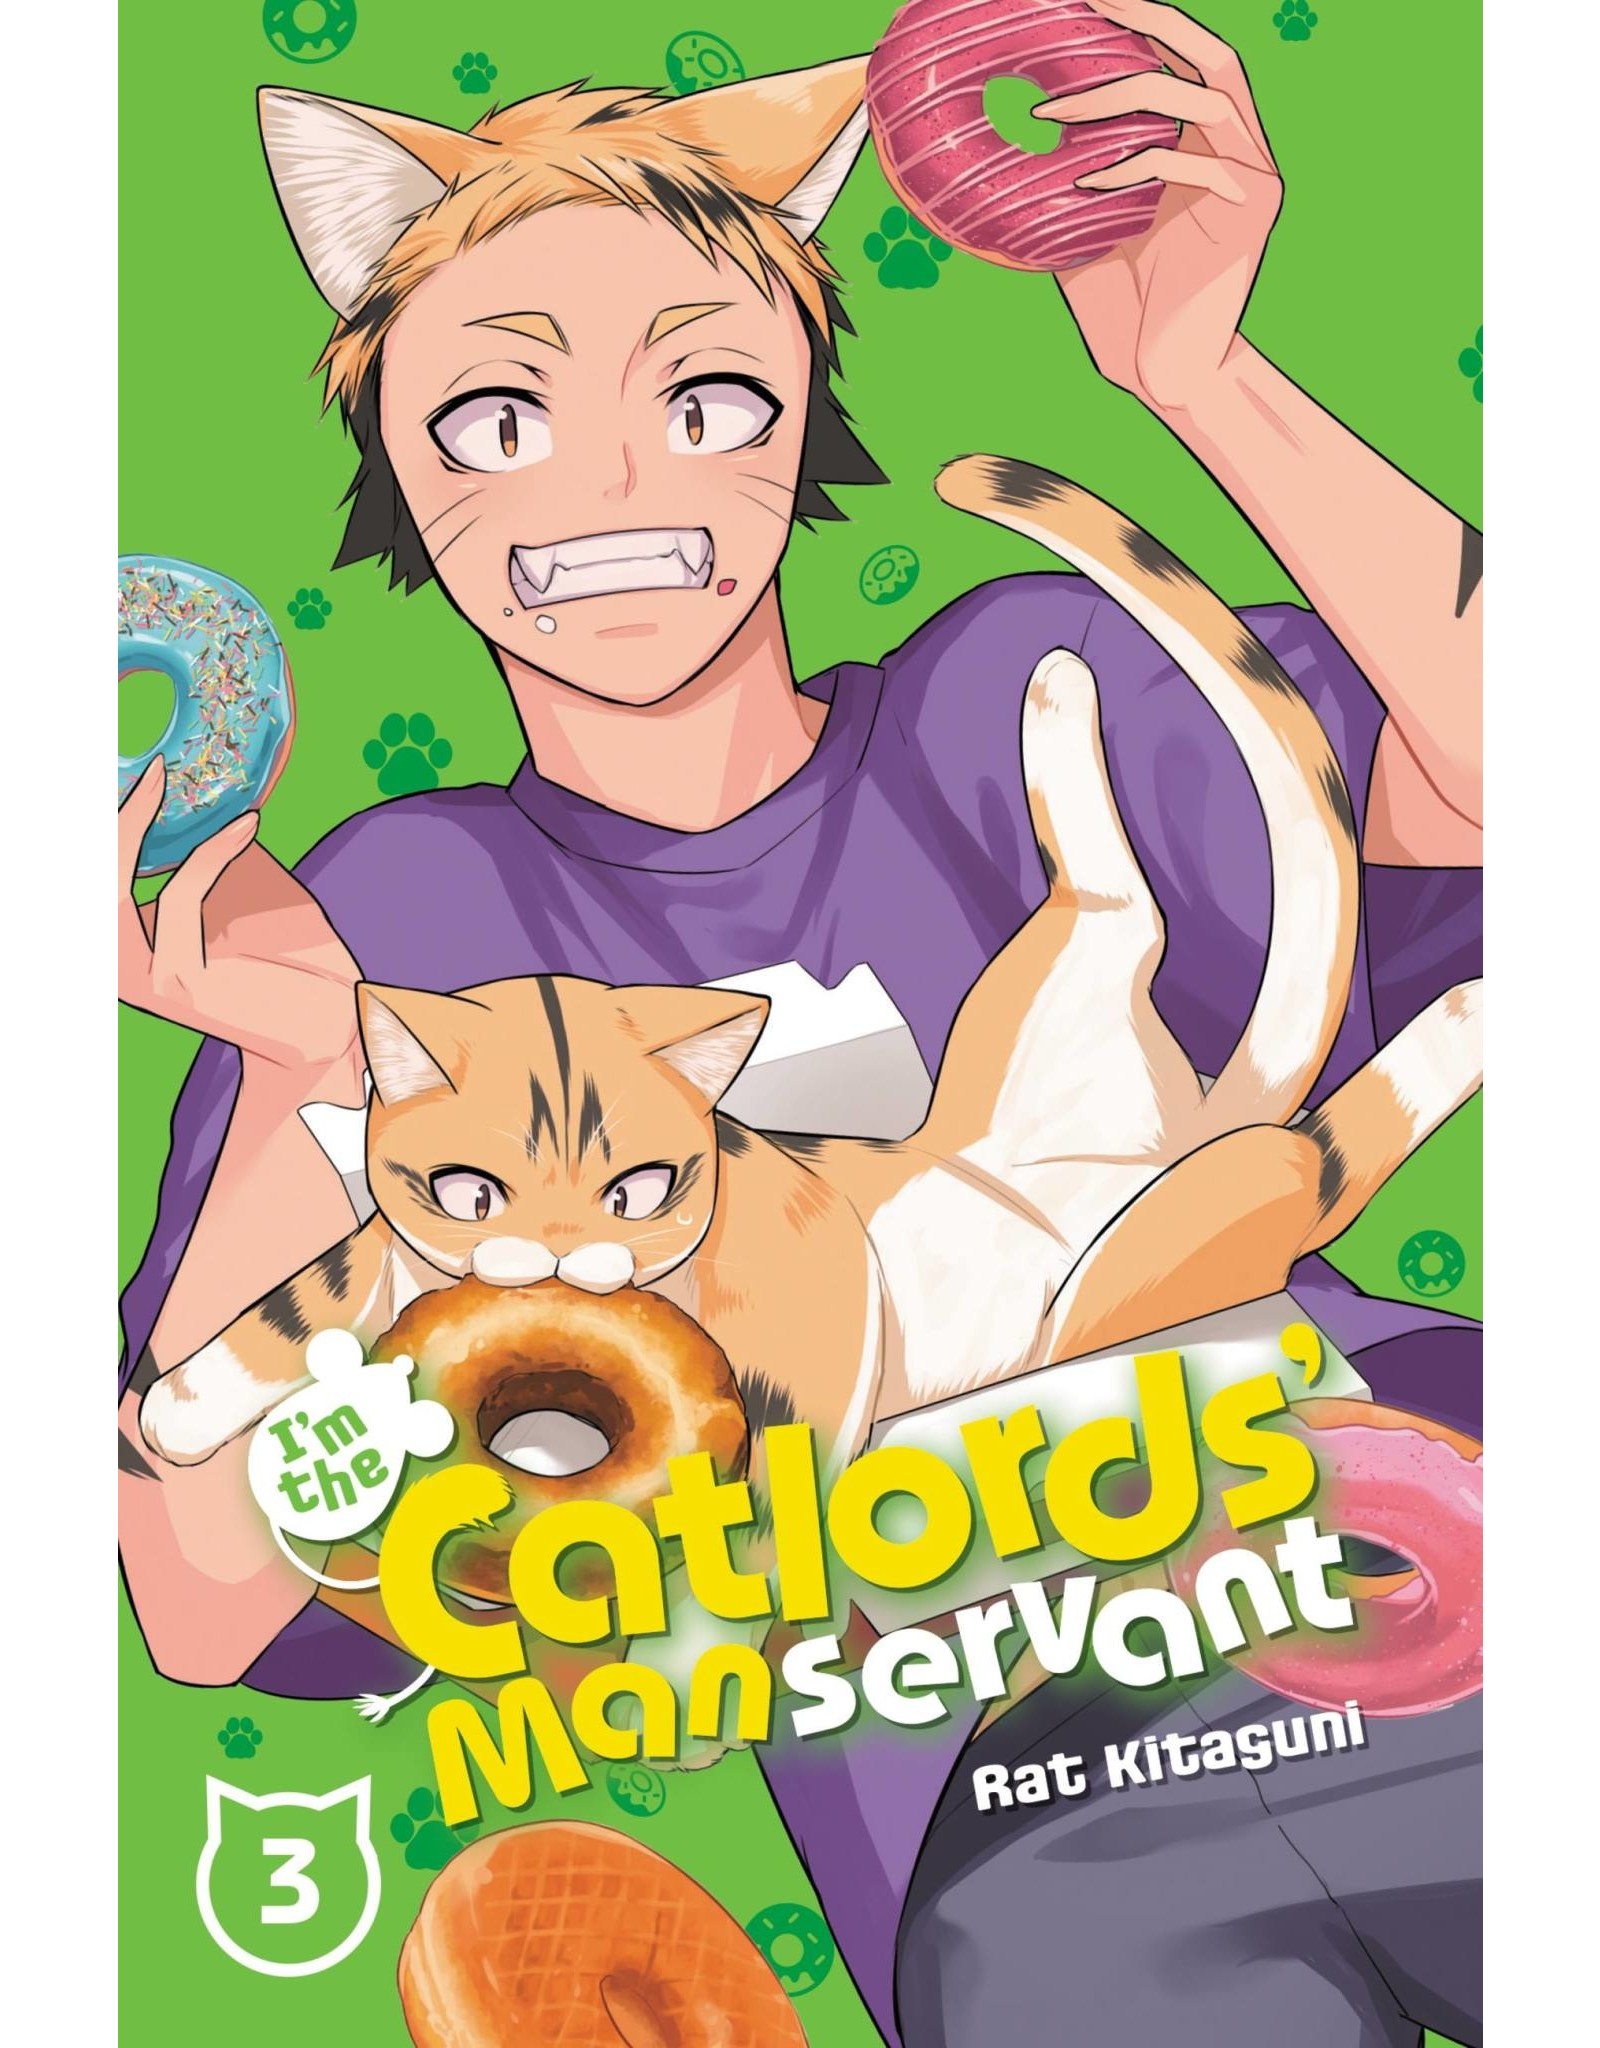 I'm The Catlords' Manservant 03 (Engelstalig) - Manga